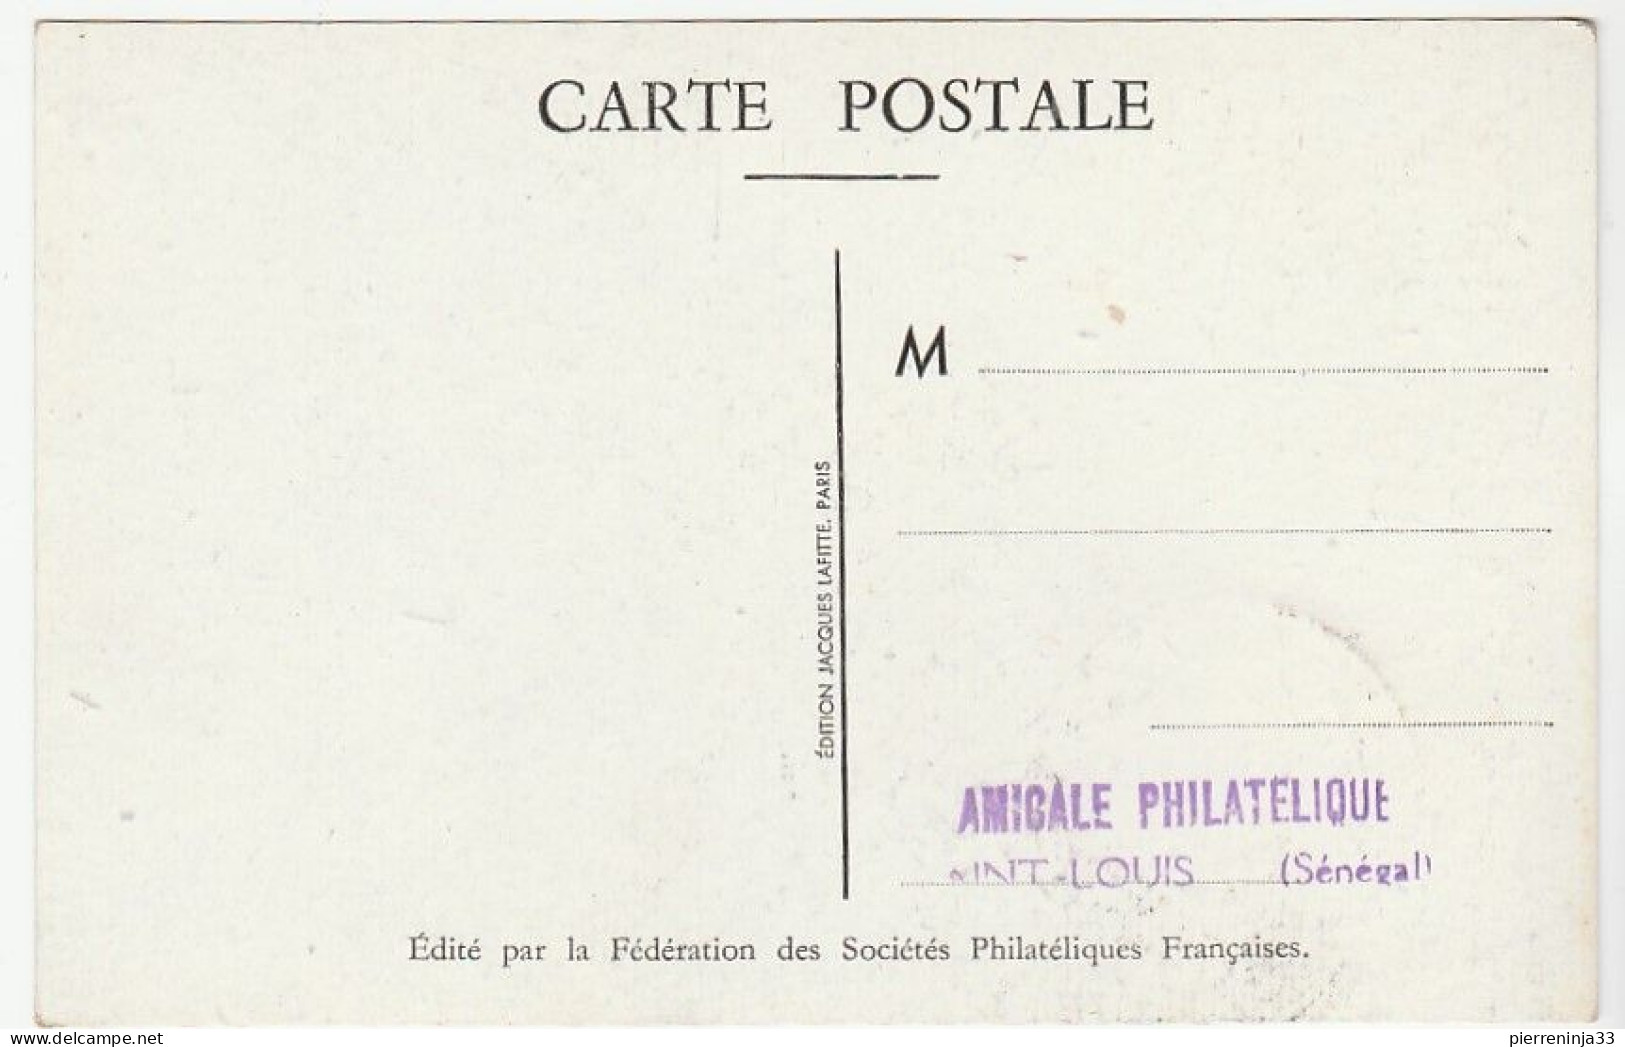 Carte Journée Du Timbre, Saint Louis Du Sénégal, Aviation, 1948 - Cartas & Documentos